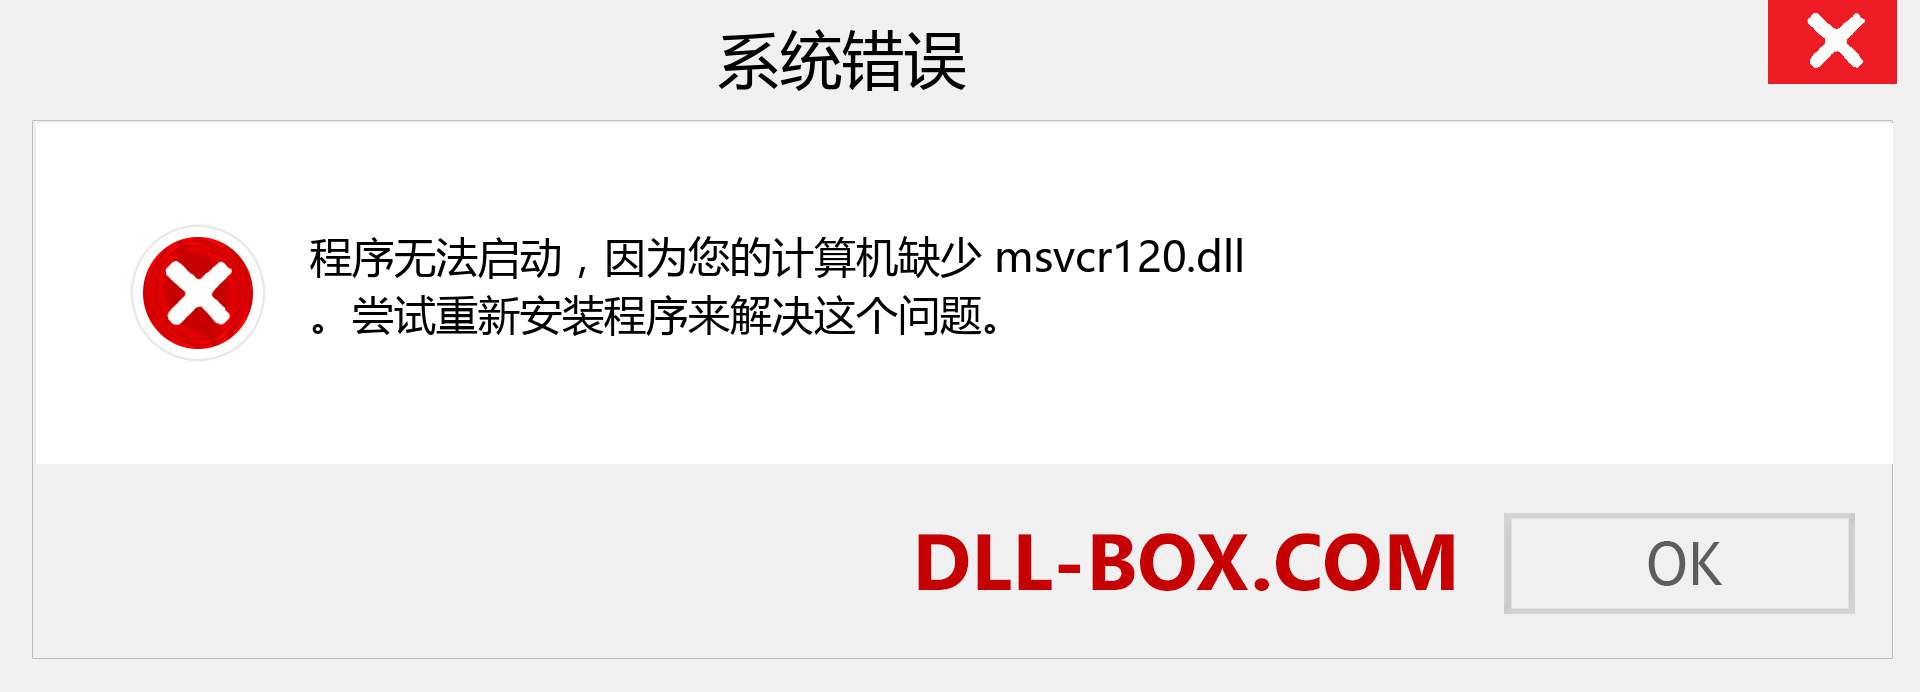 msvcr120.dll 文件丢失？。 适用于 Windows 7、8、10 的下载 - 修复 Windows、照片、图像上的 msvcr120 dll 丢失错误